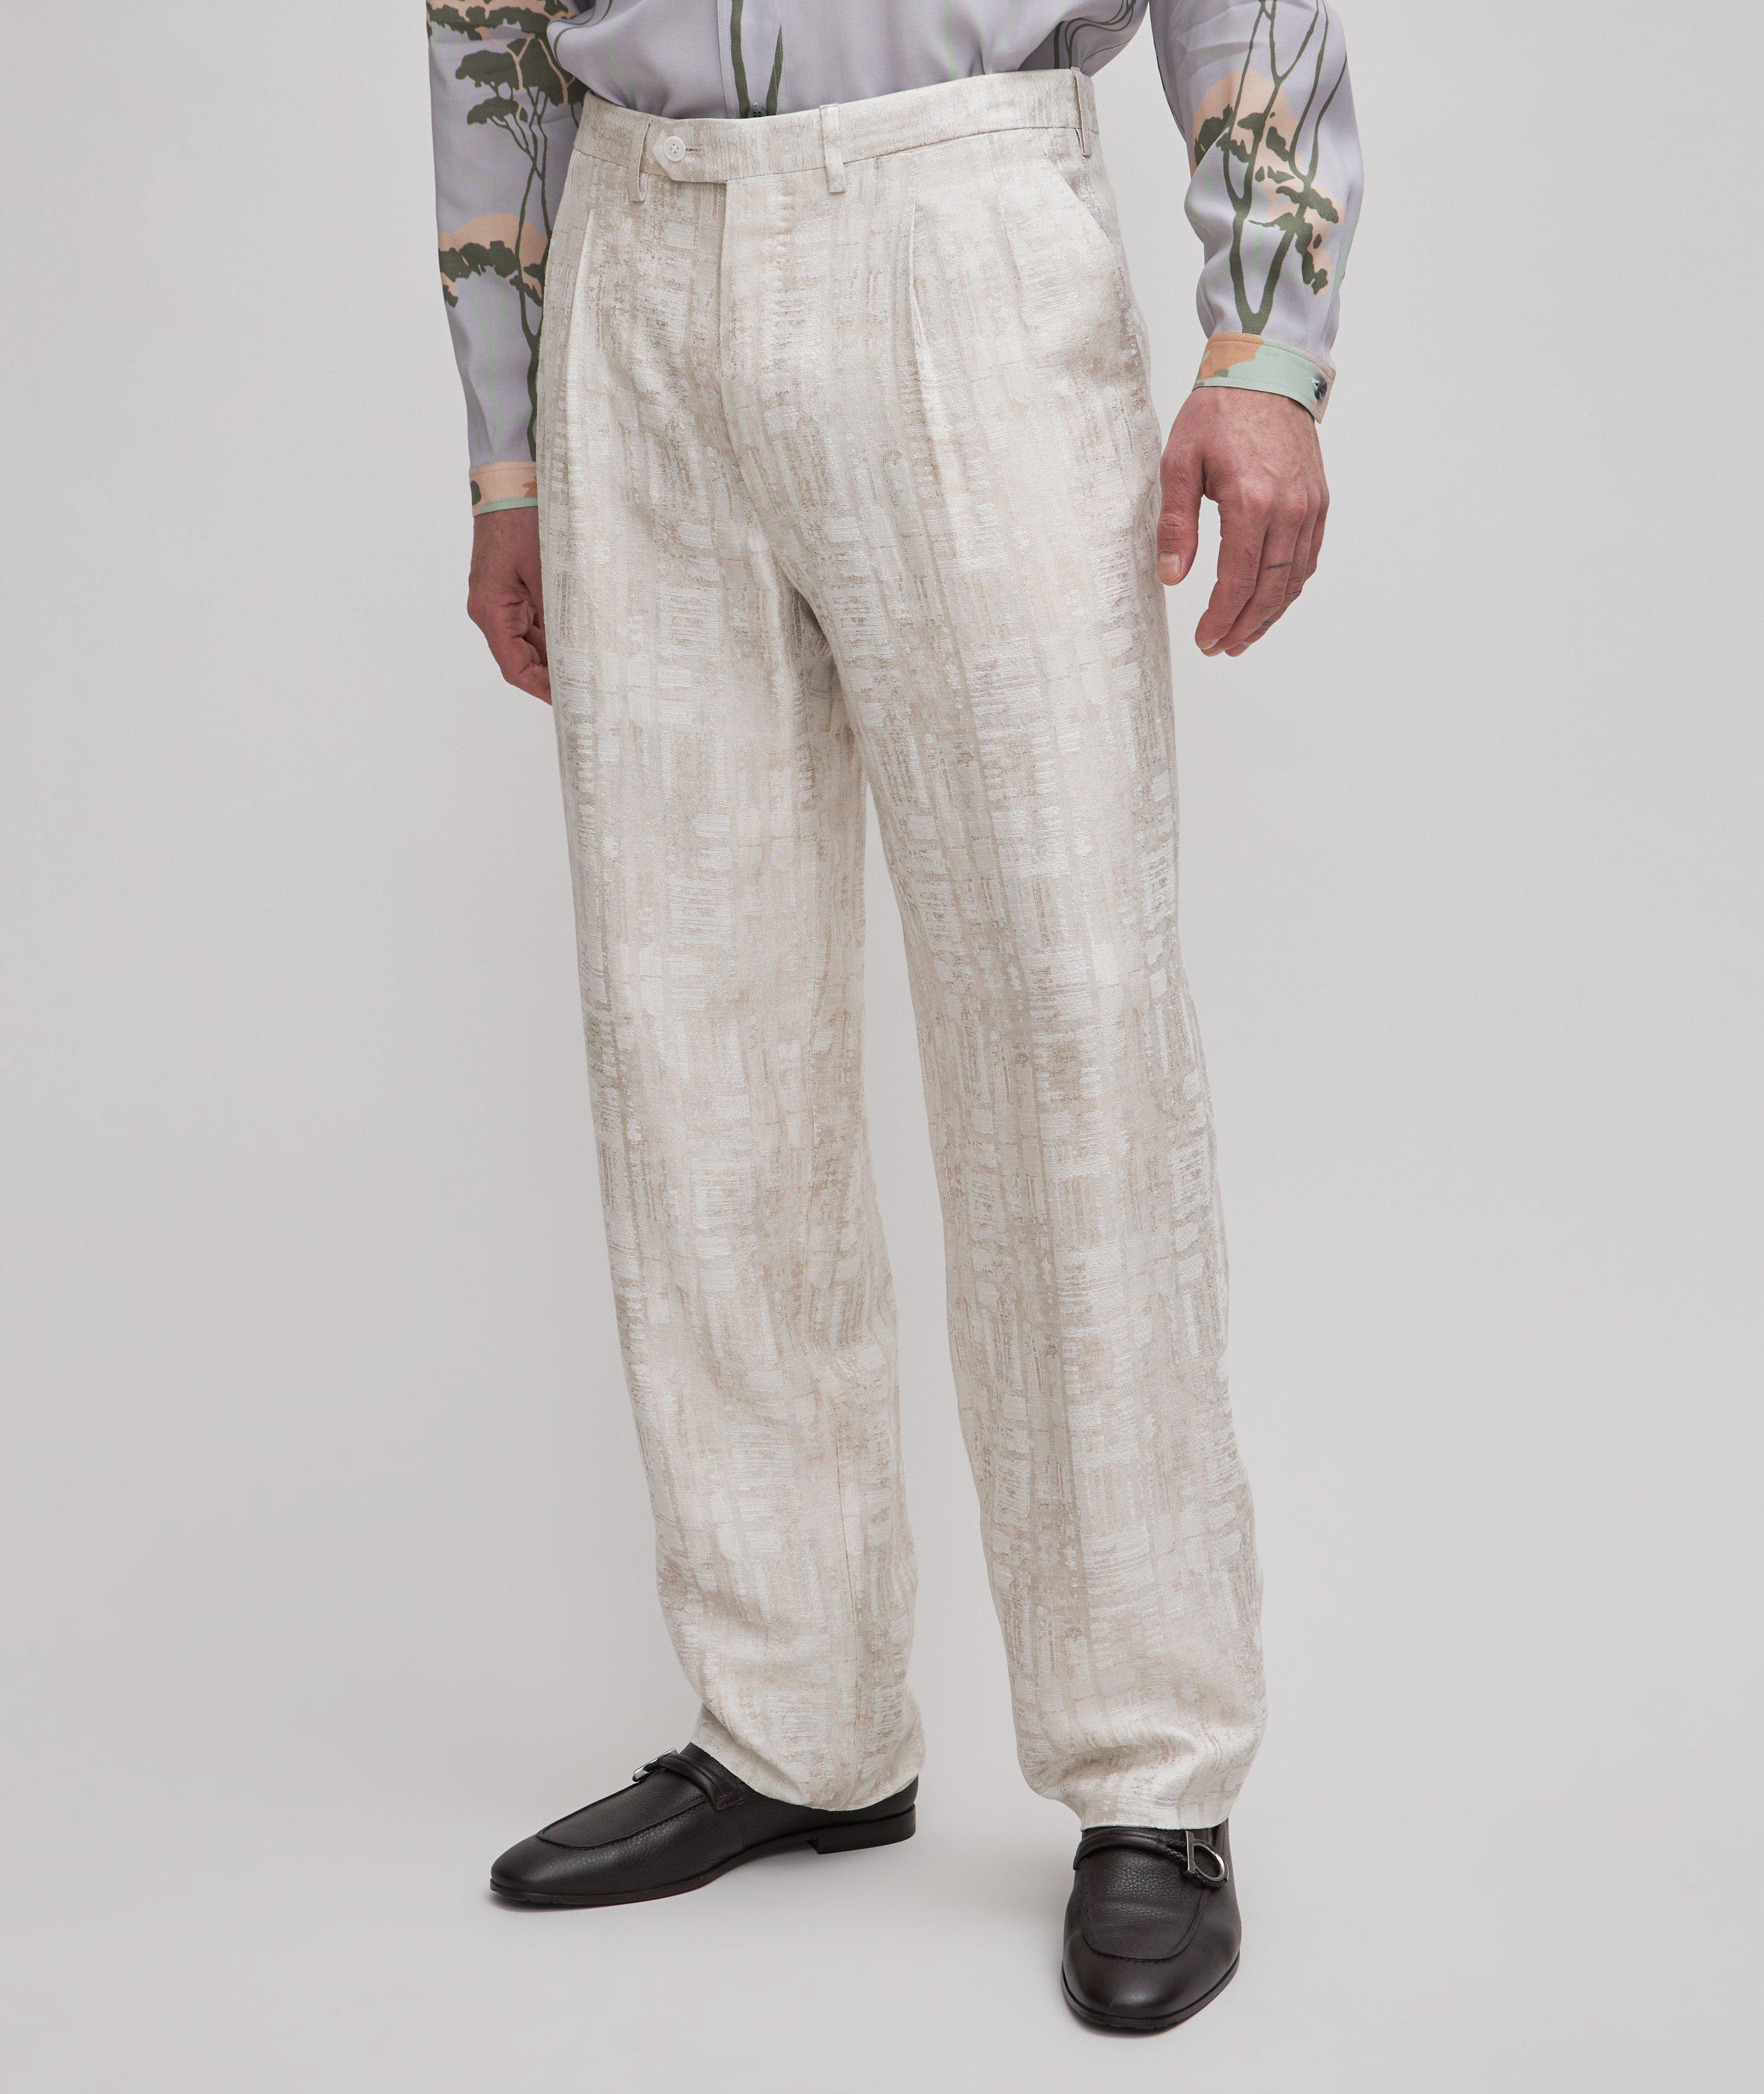 Pantalon en tissu technique à motif tissé image 2